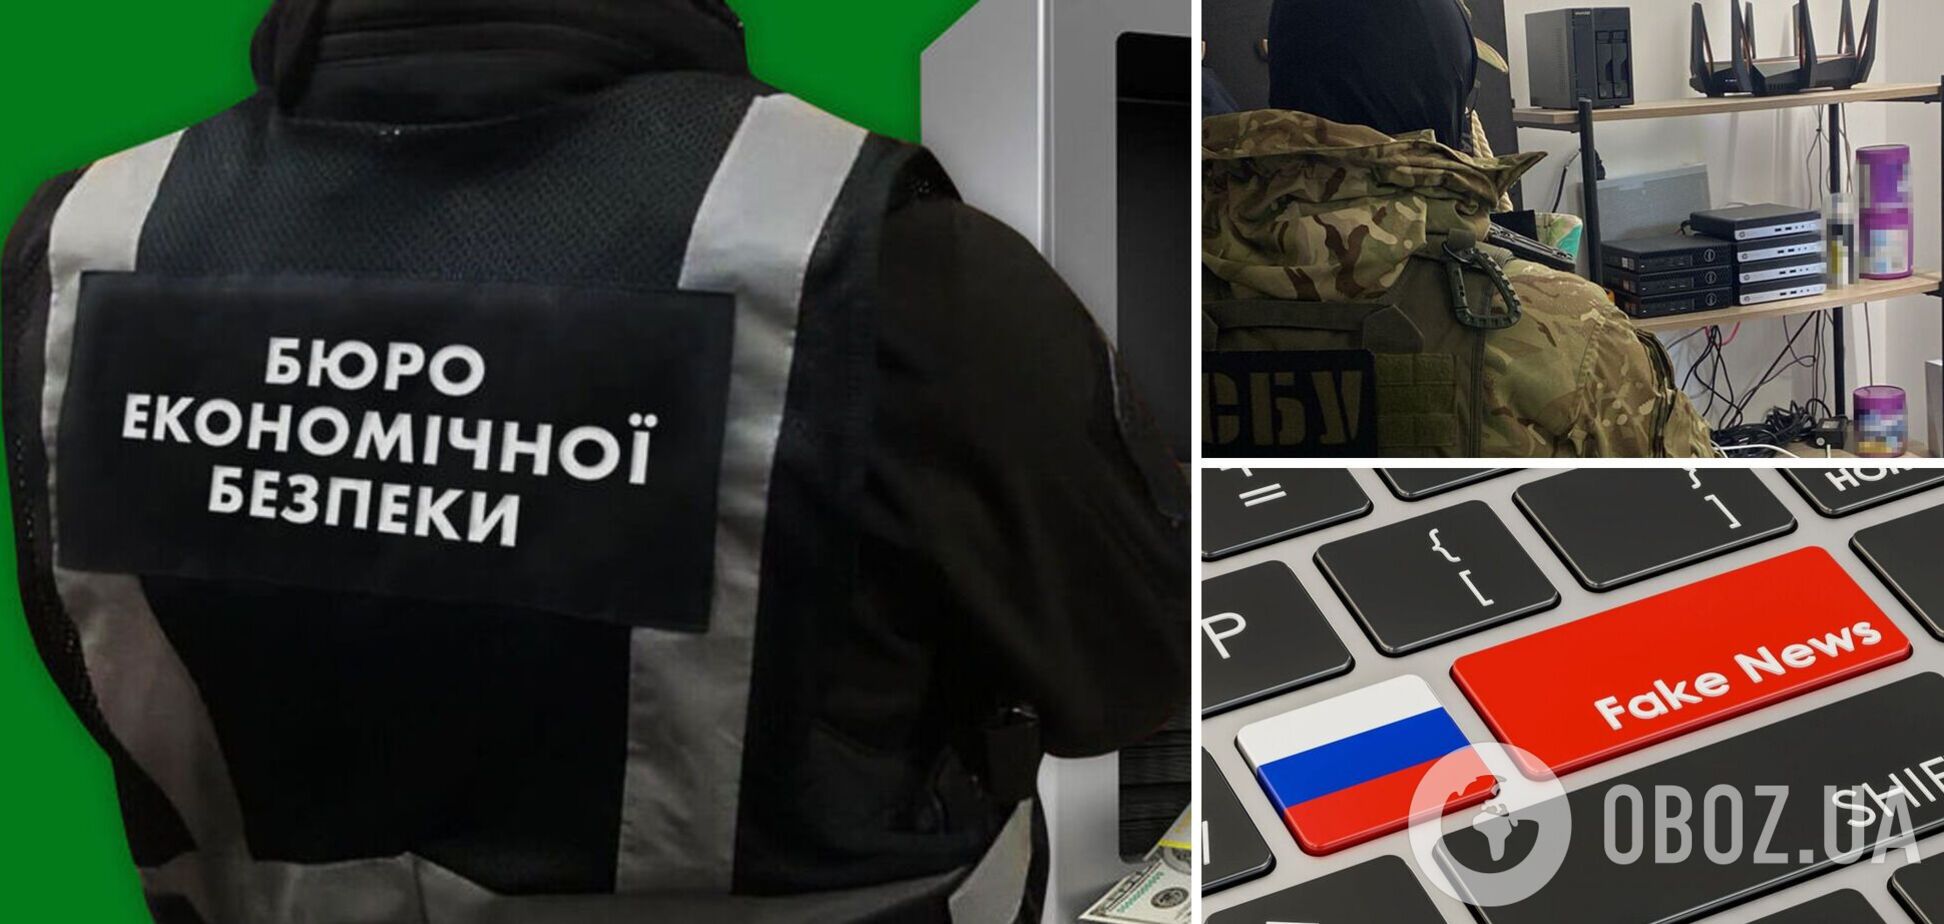 Сервери контролювали спецслужби РФ: БЕБ та СБУ викрили проксі-центр, який росіяни використовували для пропаганди. Фото